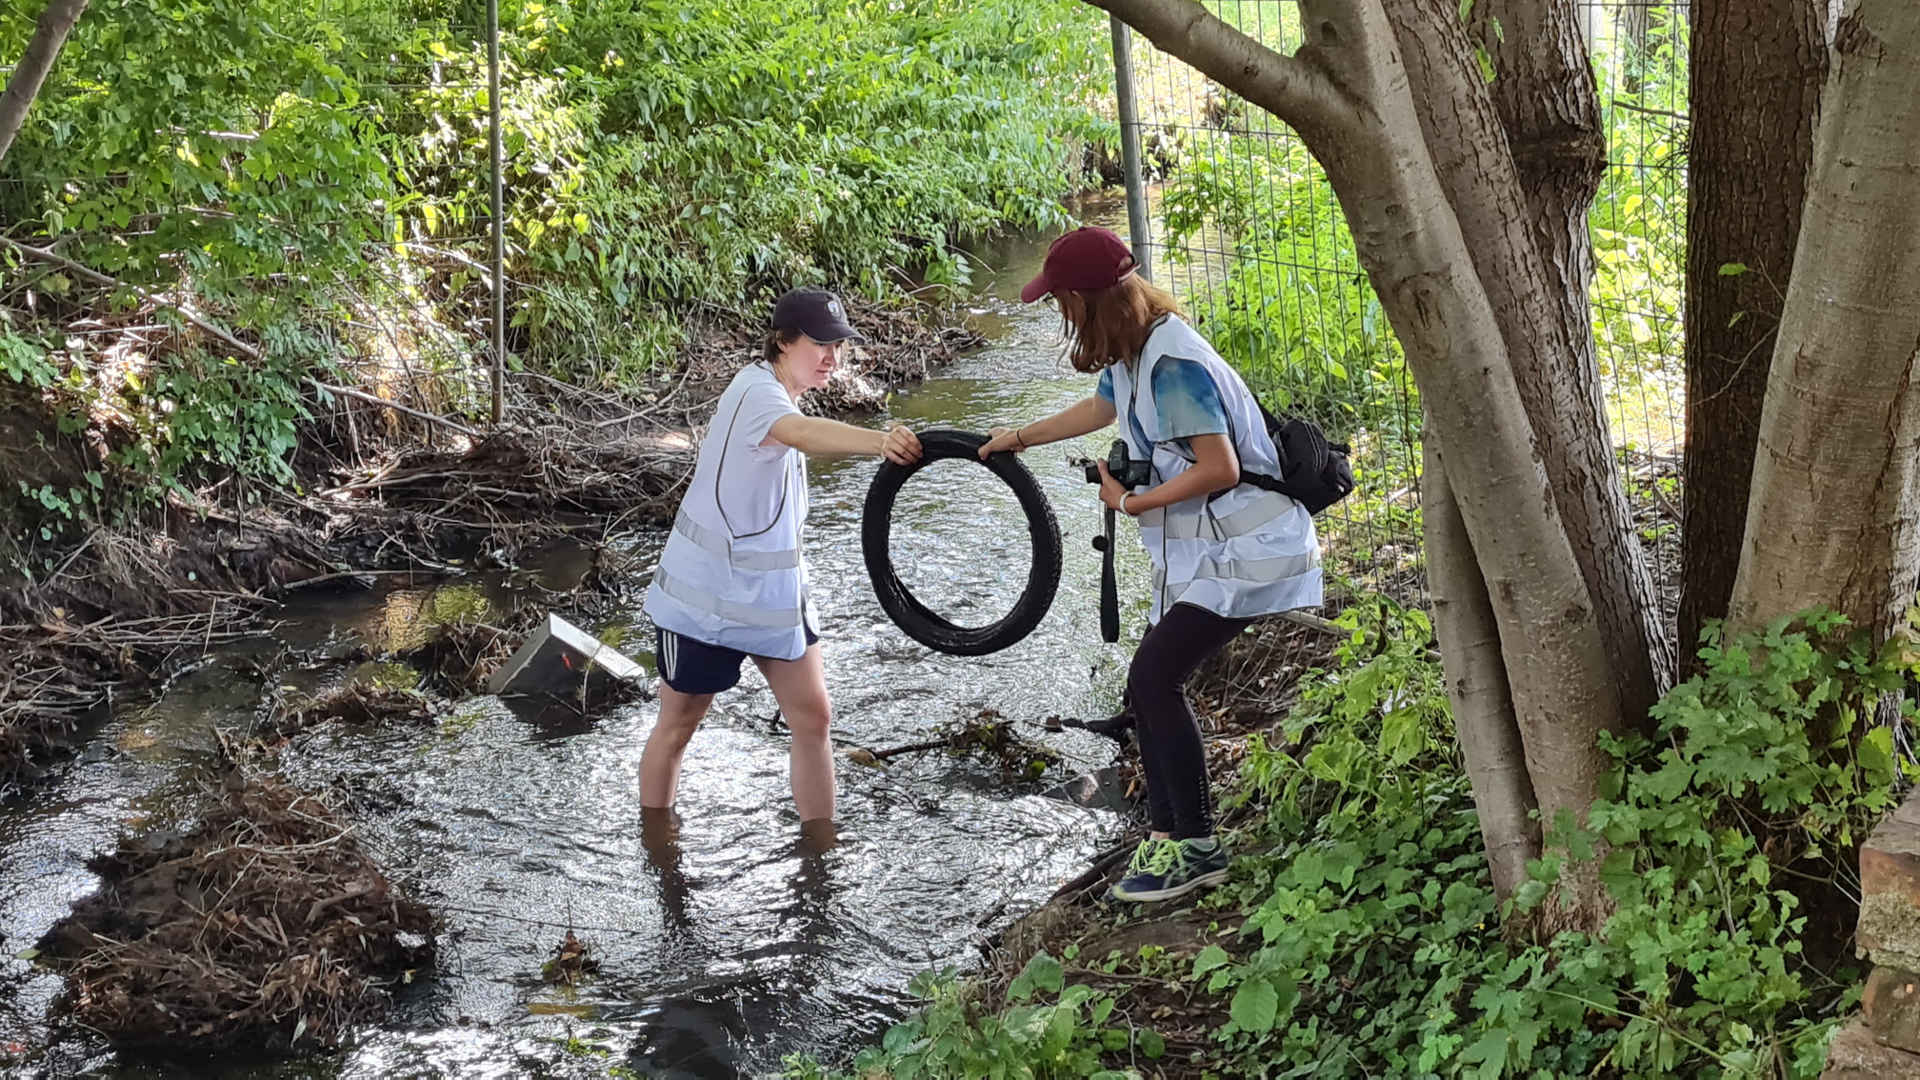 clean Up Walk: WWF Jugend holt einen alten Reifen aus einem Bach